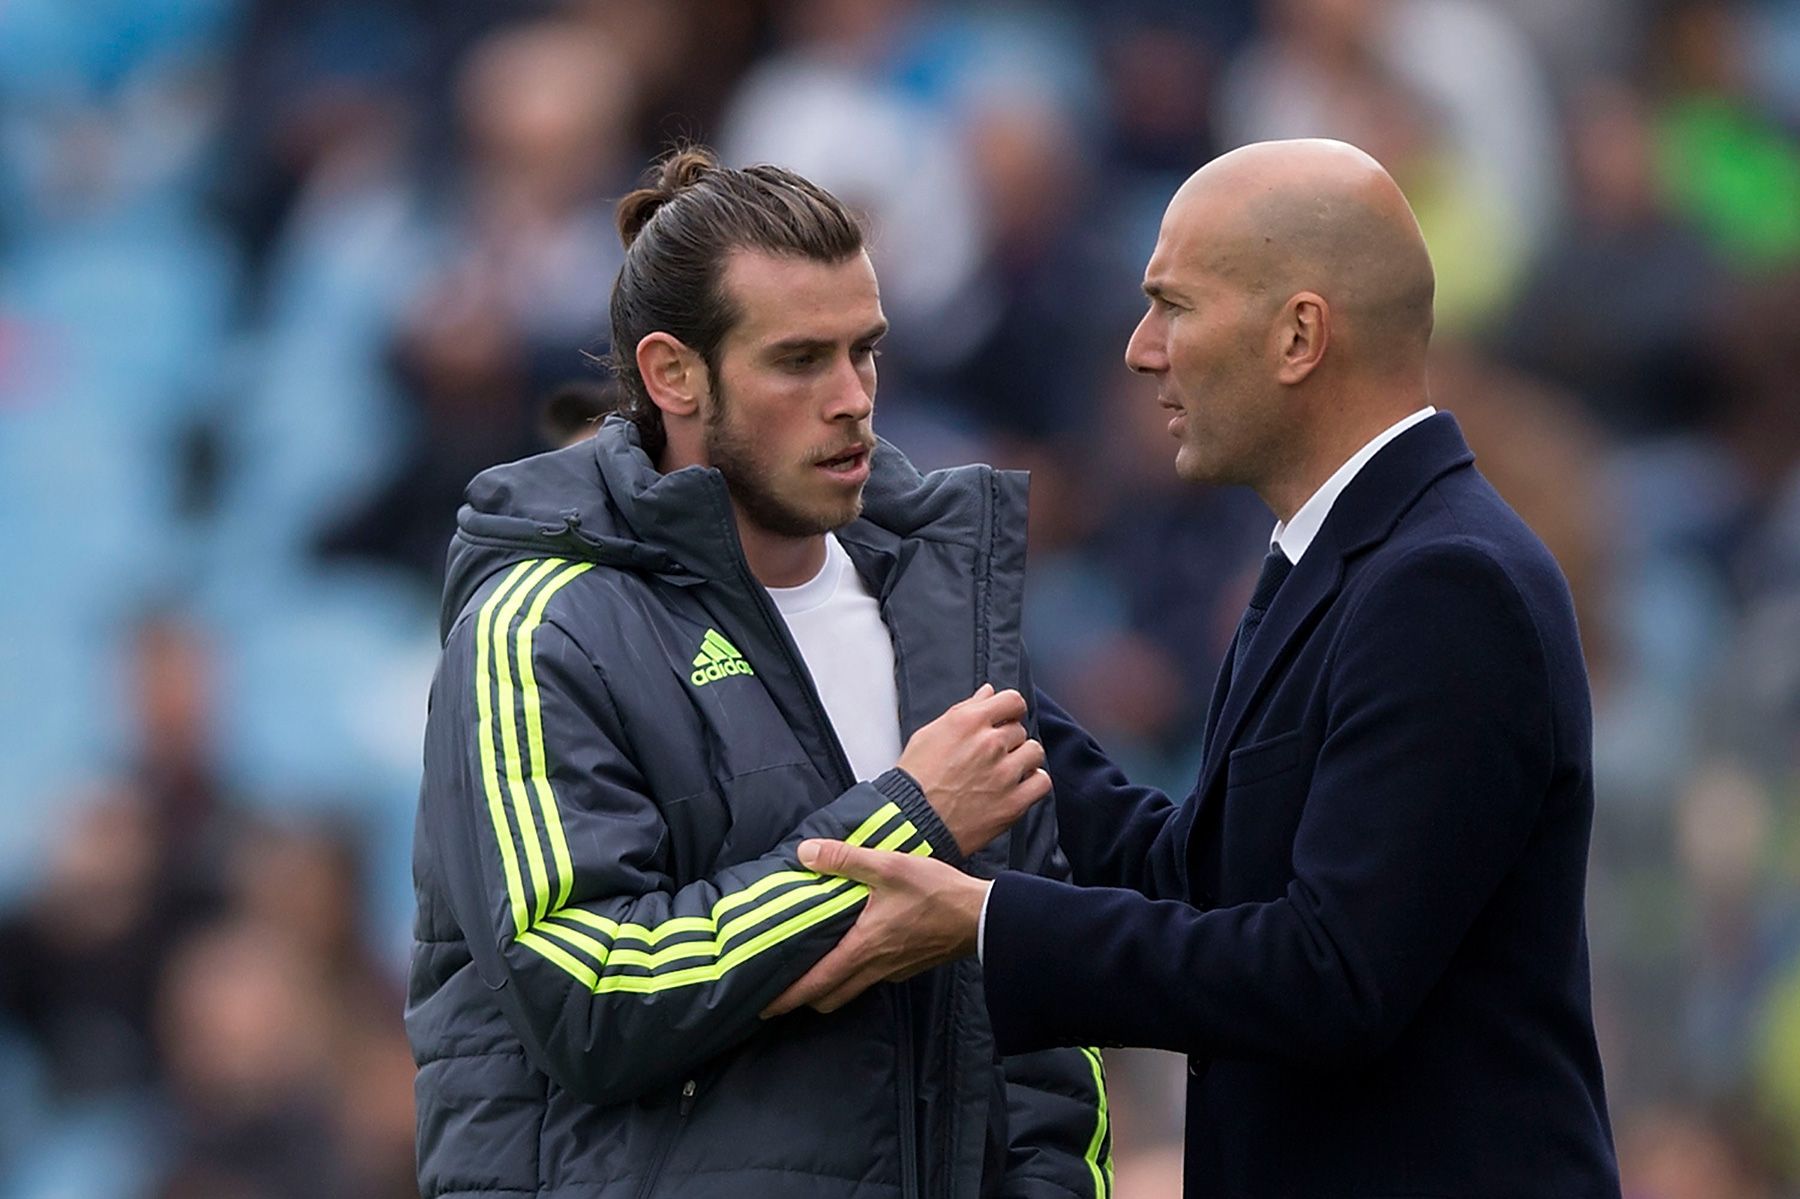 Gareth Bale and Zinedine Zidane after a match